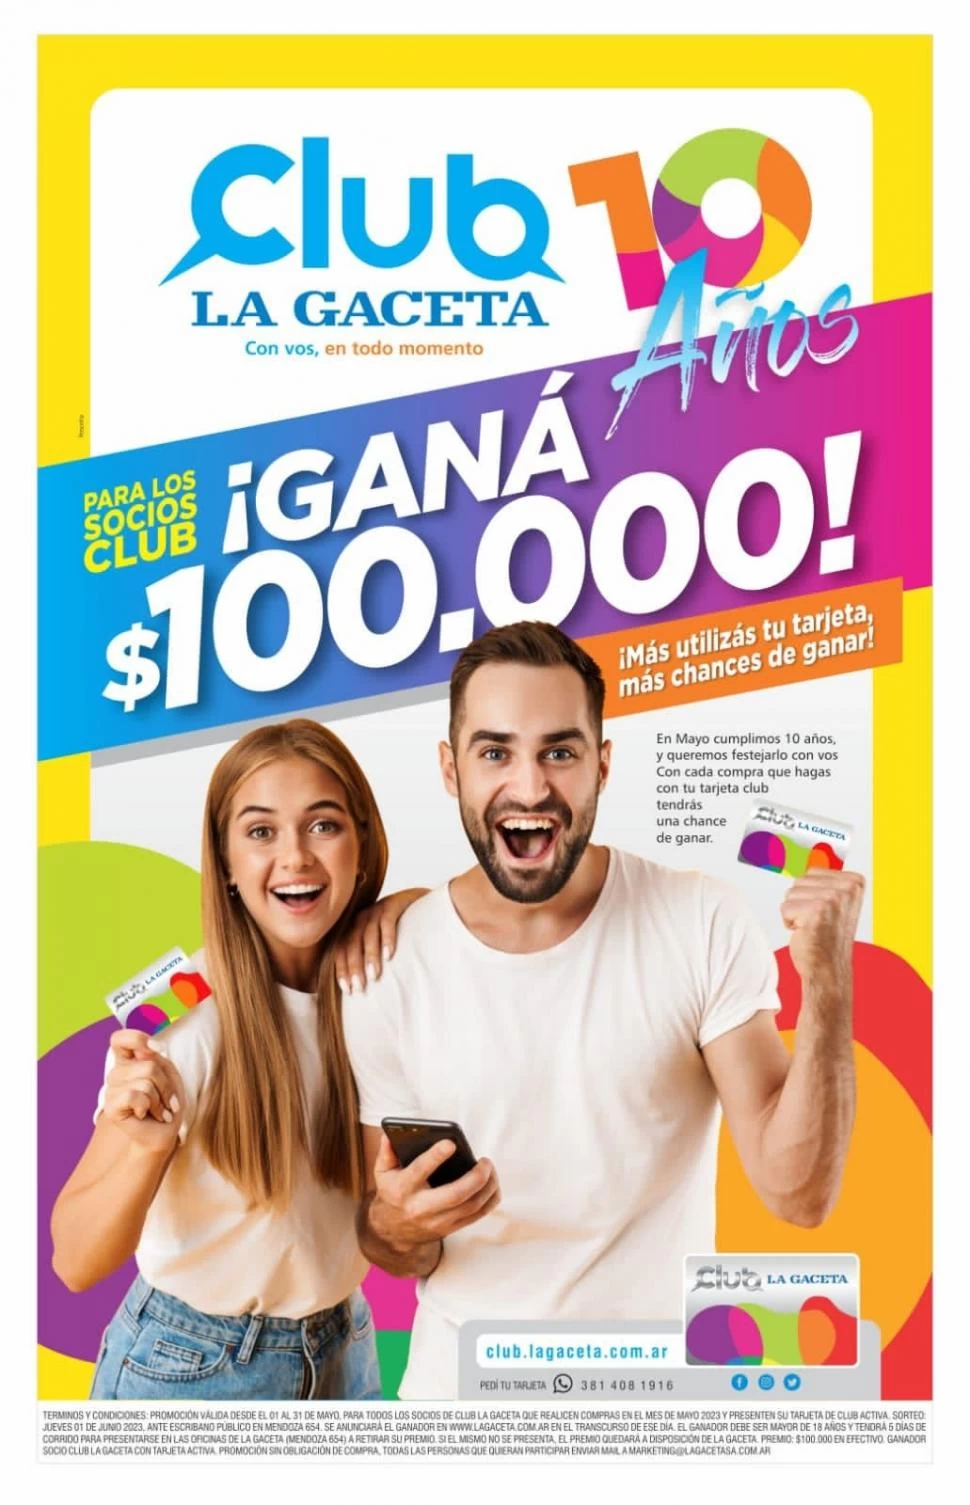 SOCIOS. Los usuarios de Club LA GACETA participan por $ 100.000 en efectivo. 